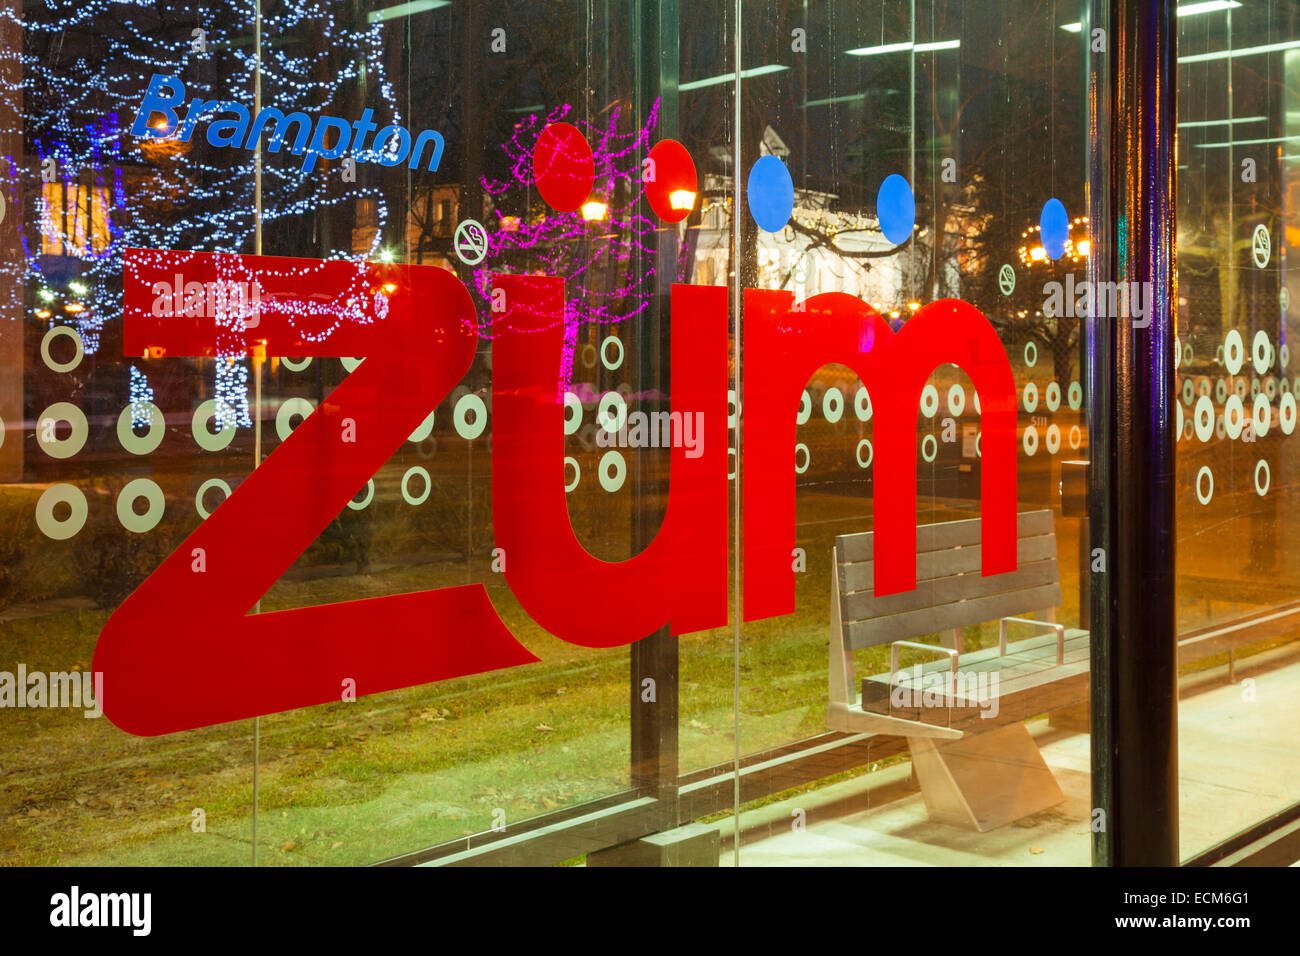 Il Züm rapid transit logo con le luci del Natale si riflette nel vetro. Downtown Brampton, Ontario, Canada. Foto Stock